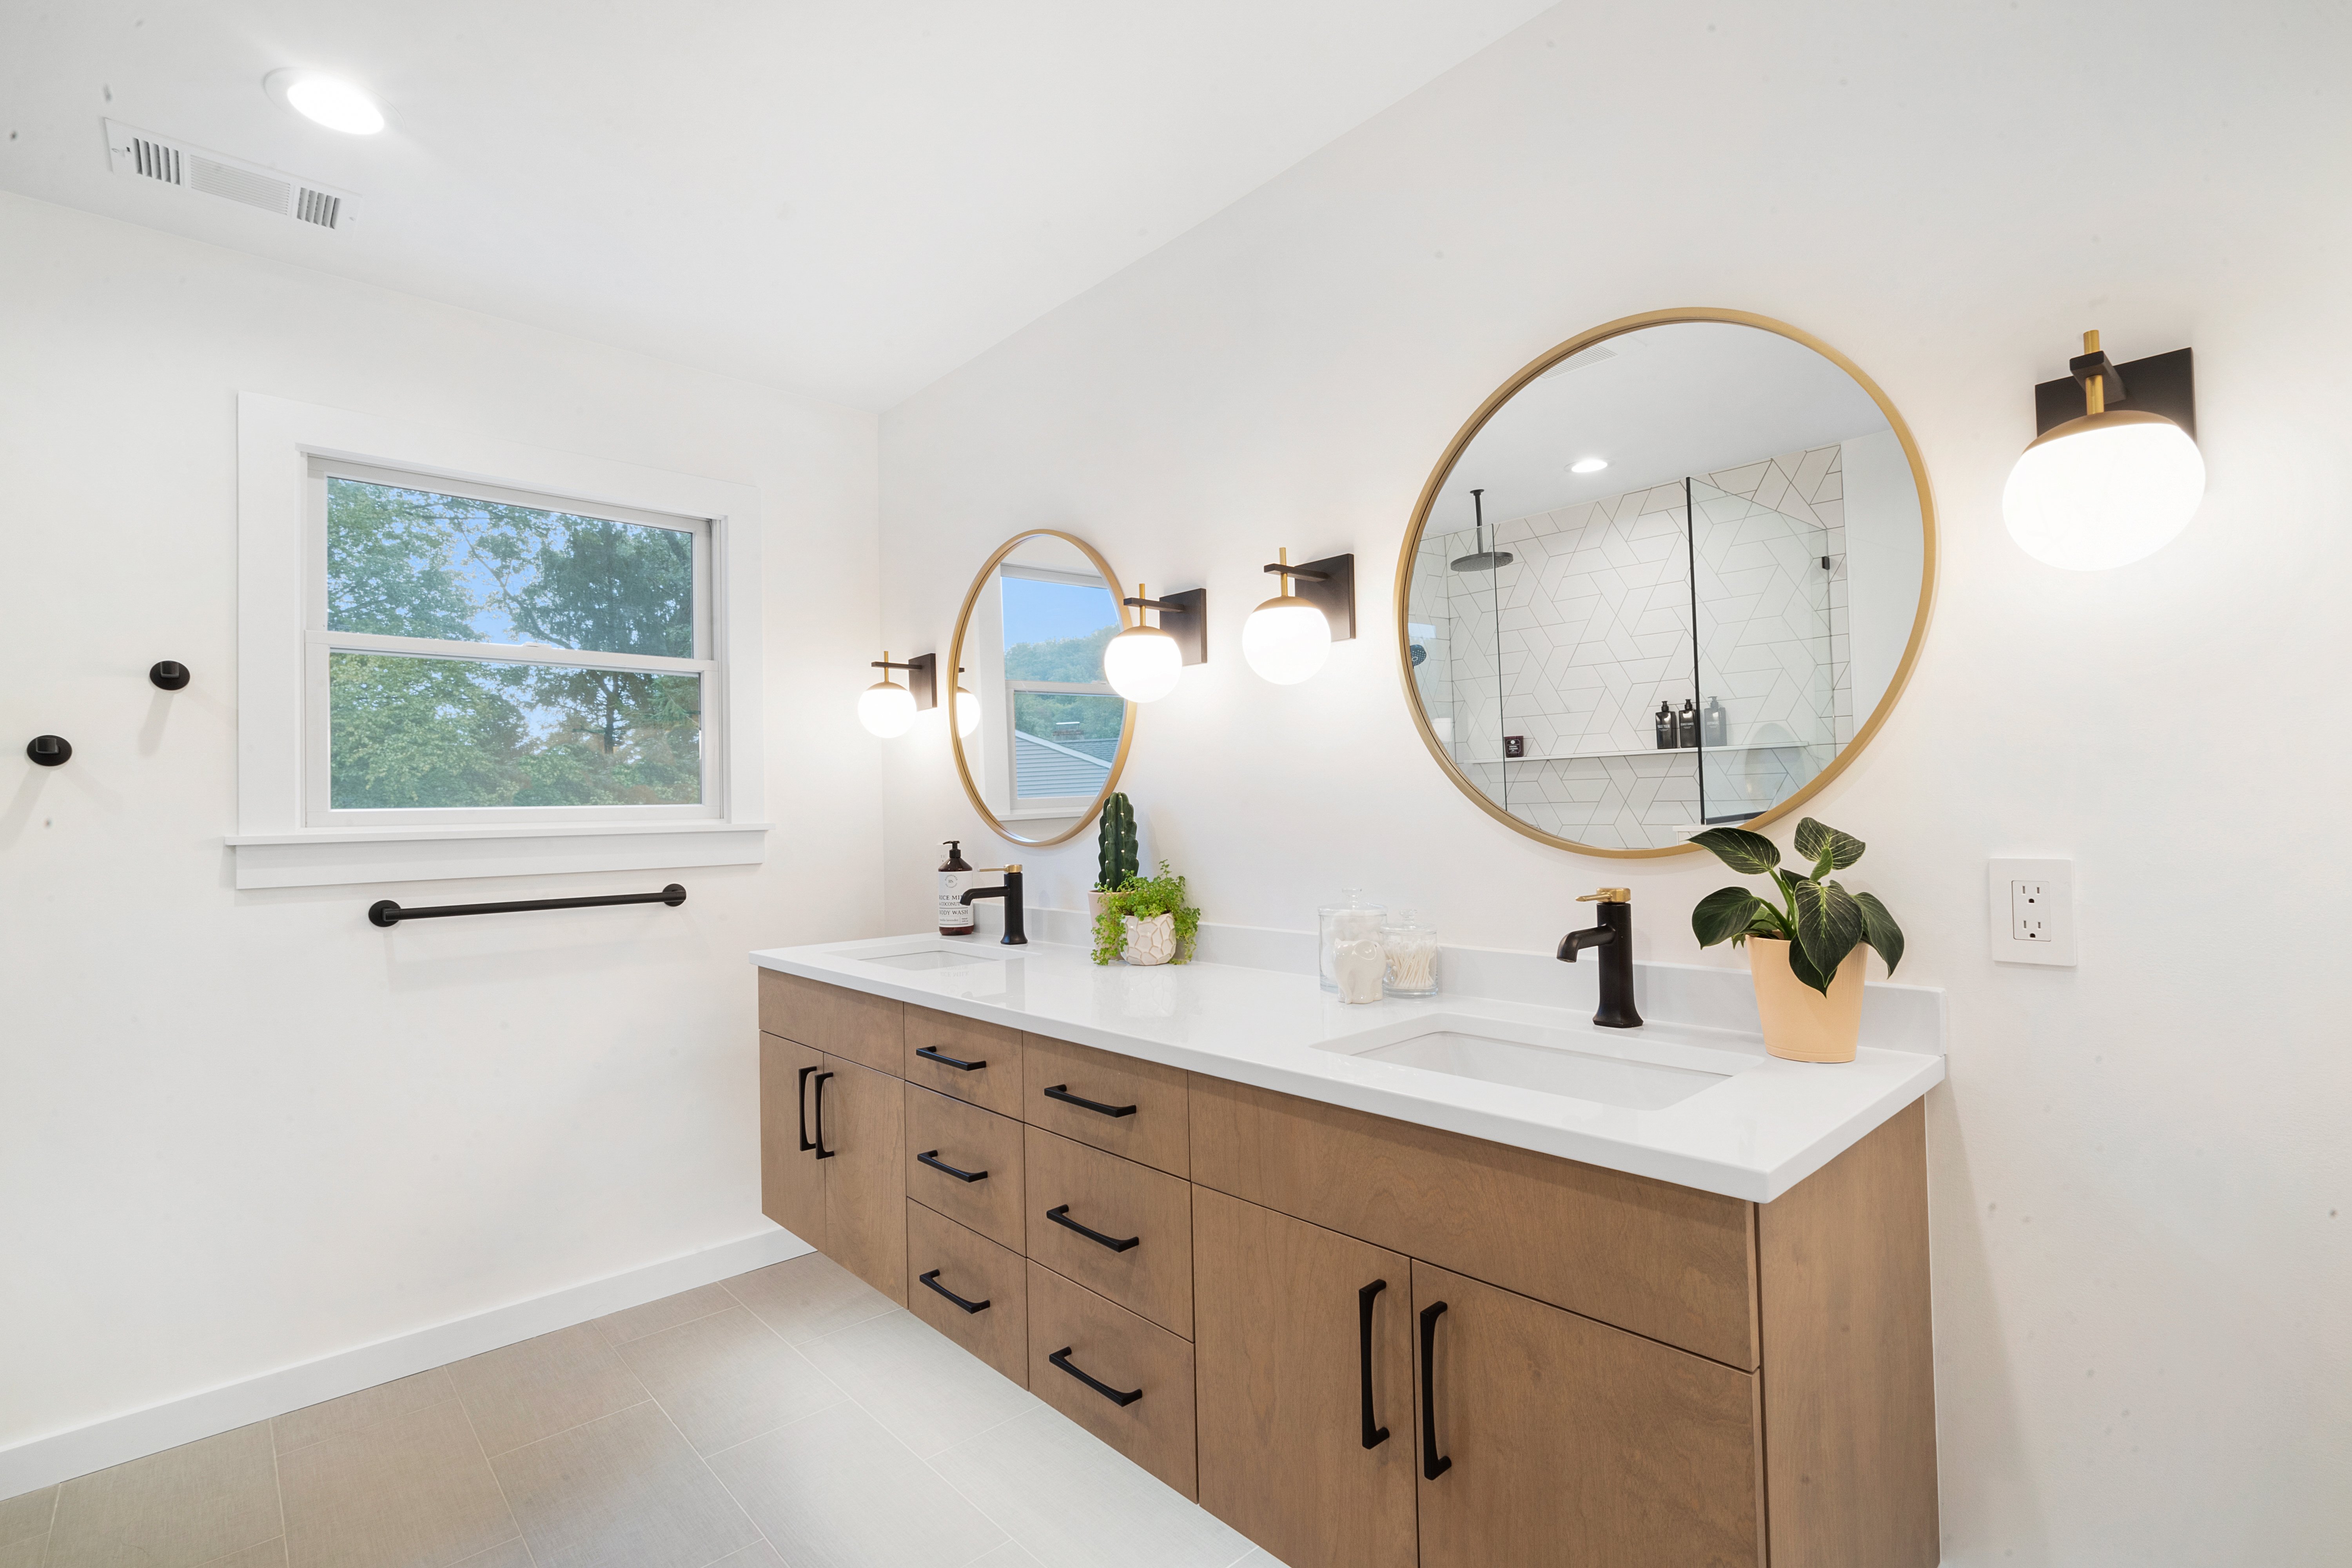 Denville, NJ  Bathroom remodel with floating vanity, large roll in shower, white tile design 